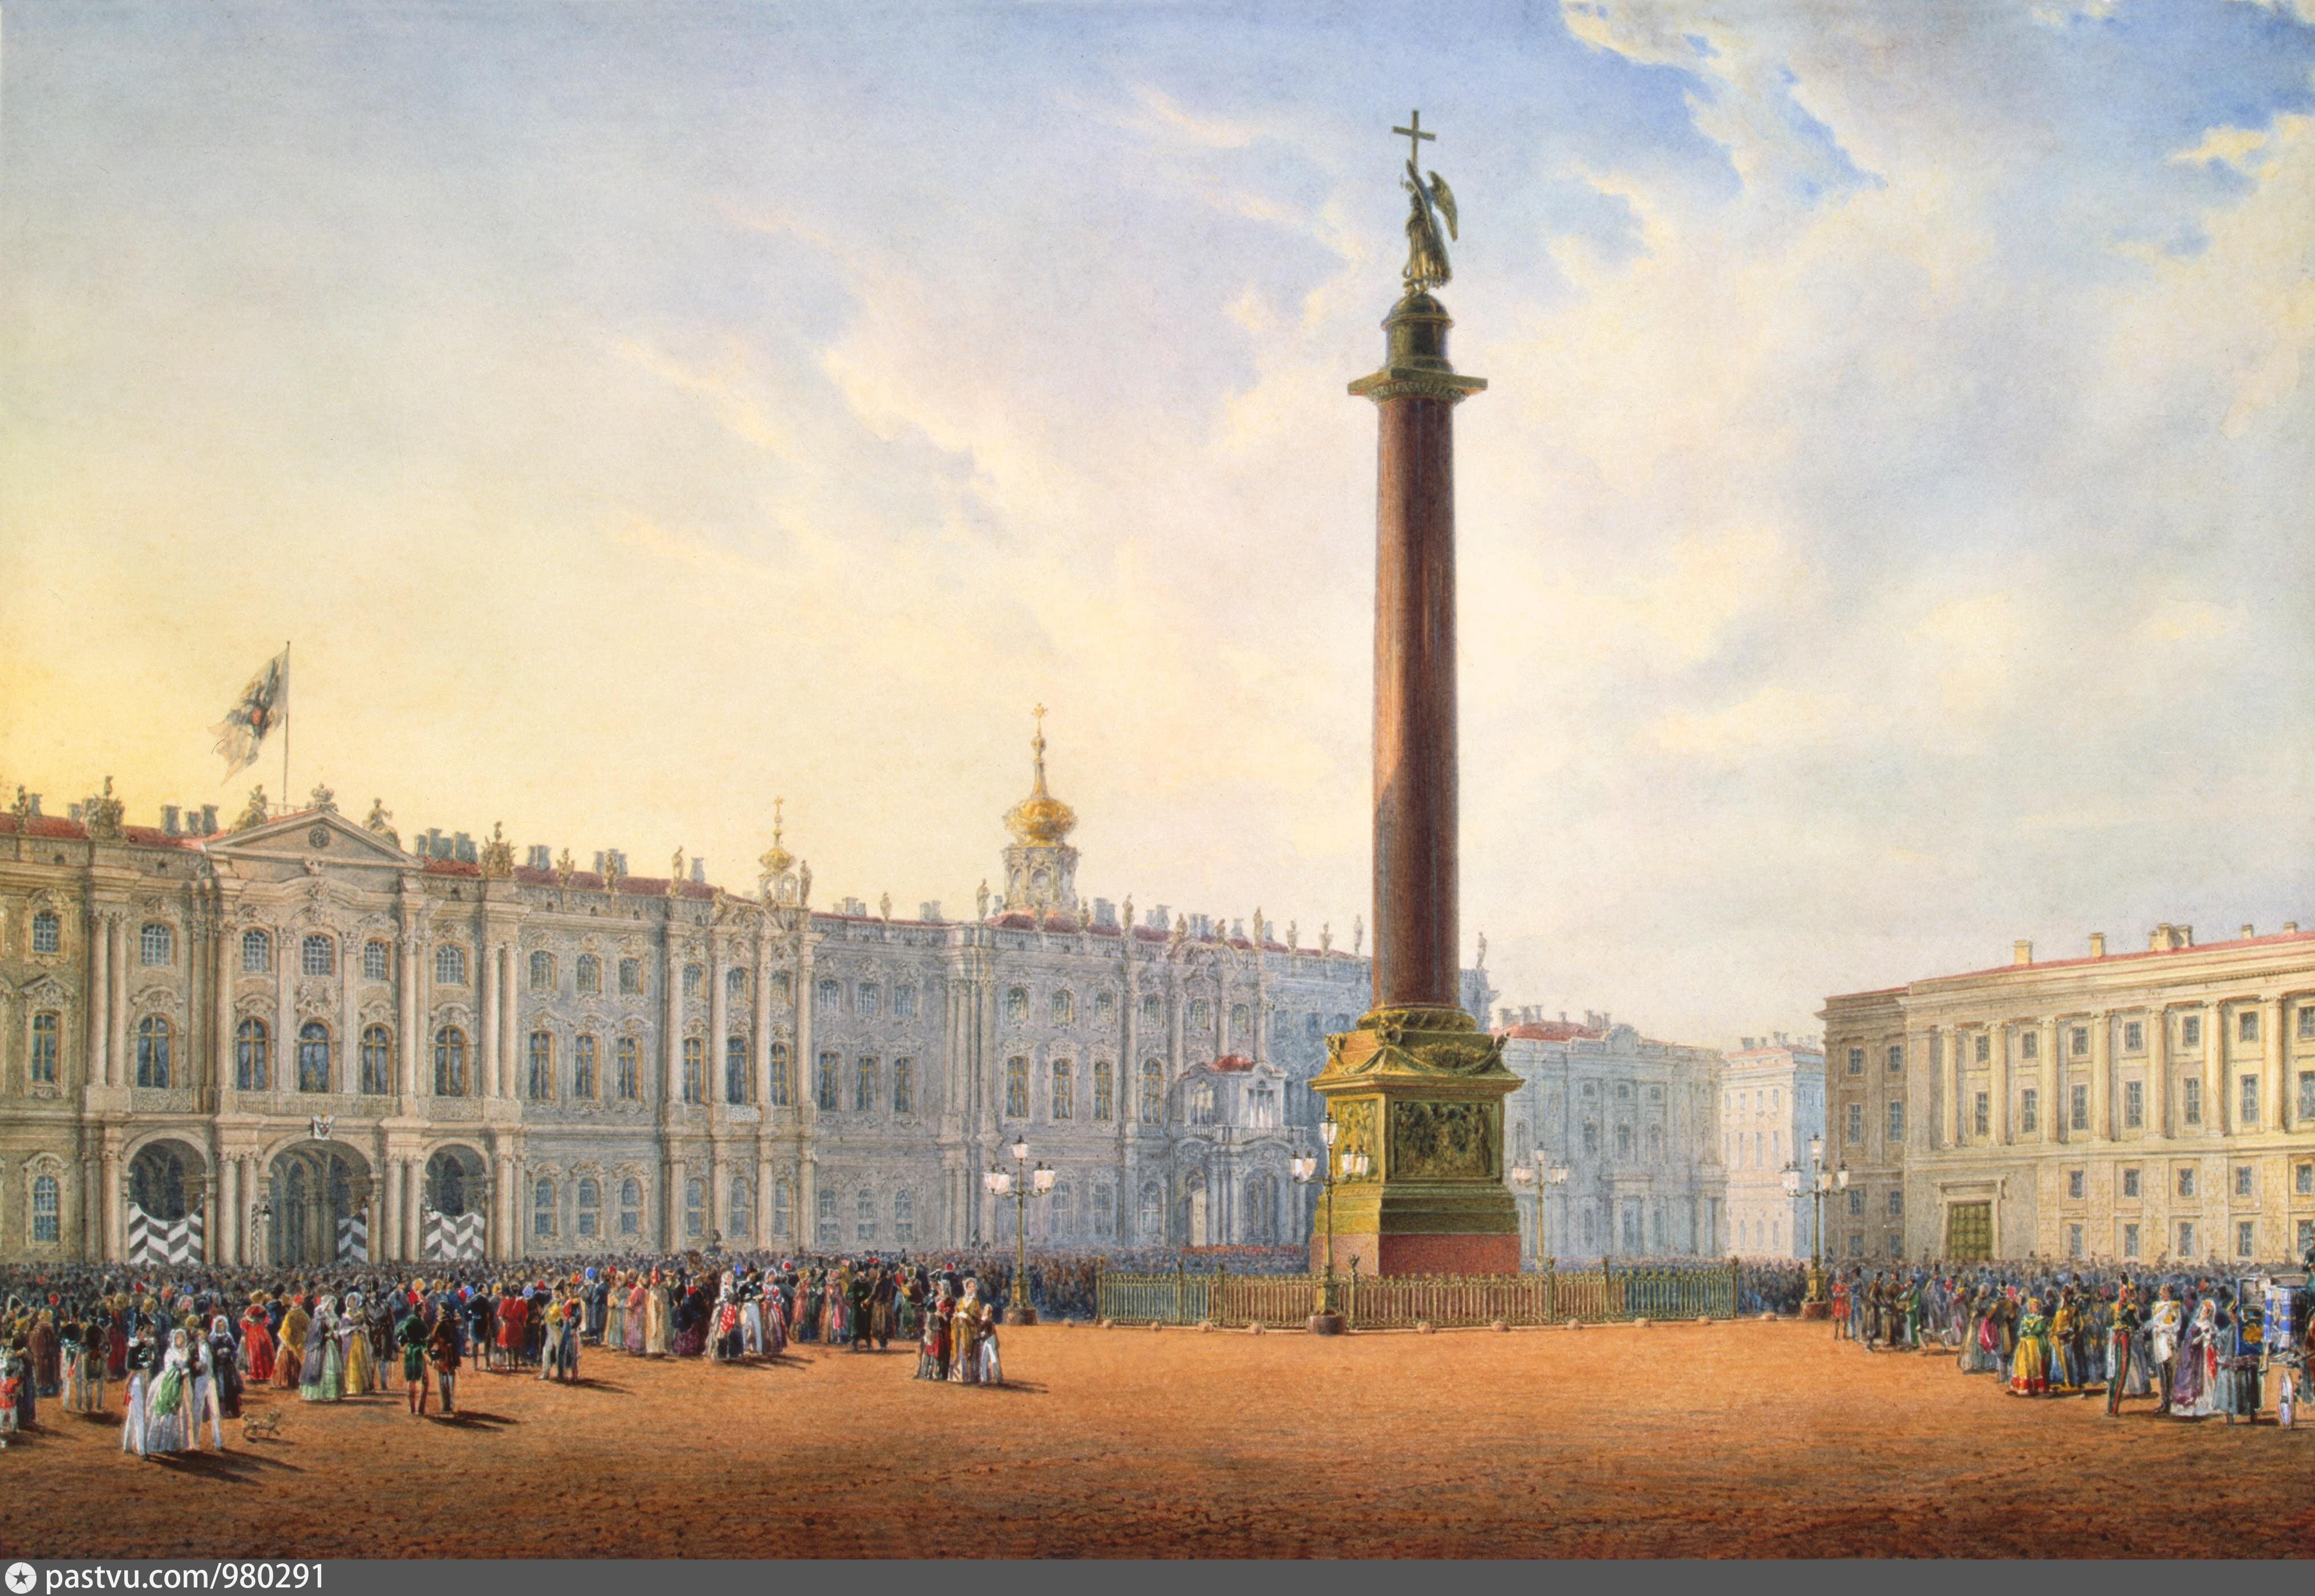 Столица при екатерине 2. Дворцовая площадь в Санкт-Петербурге 19 век. Дворцовая площадь зимний дворец.